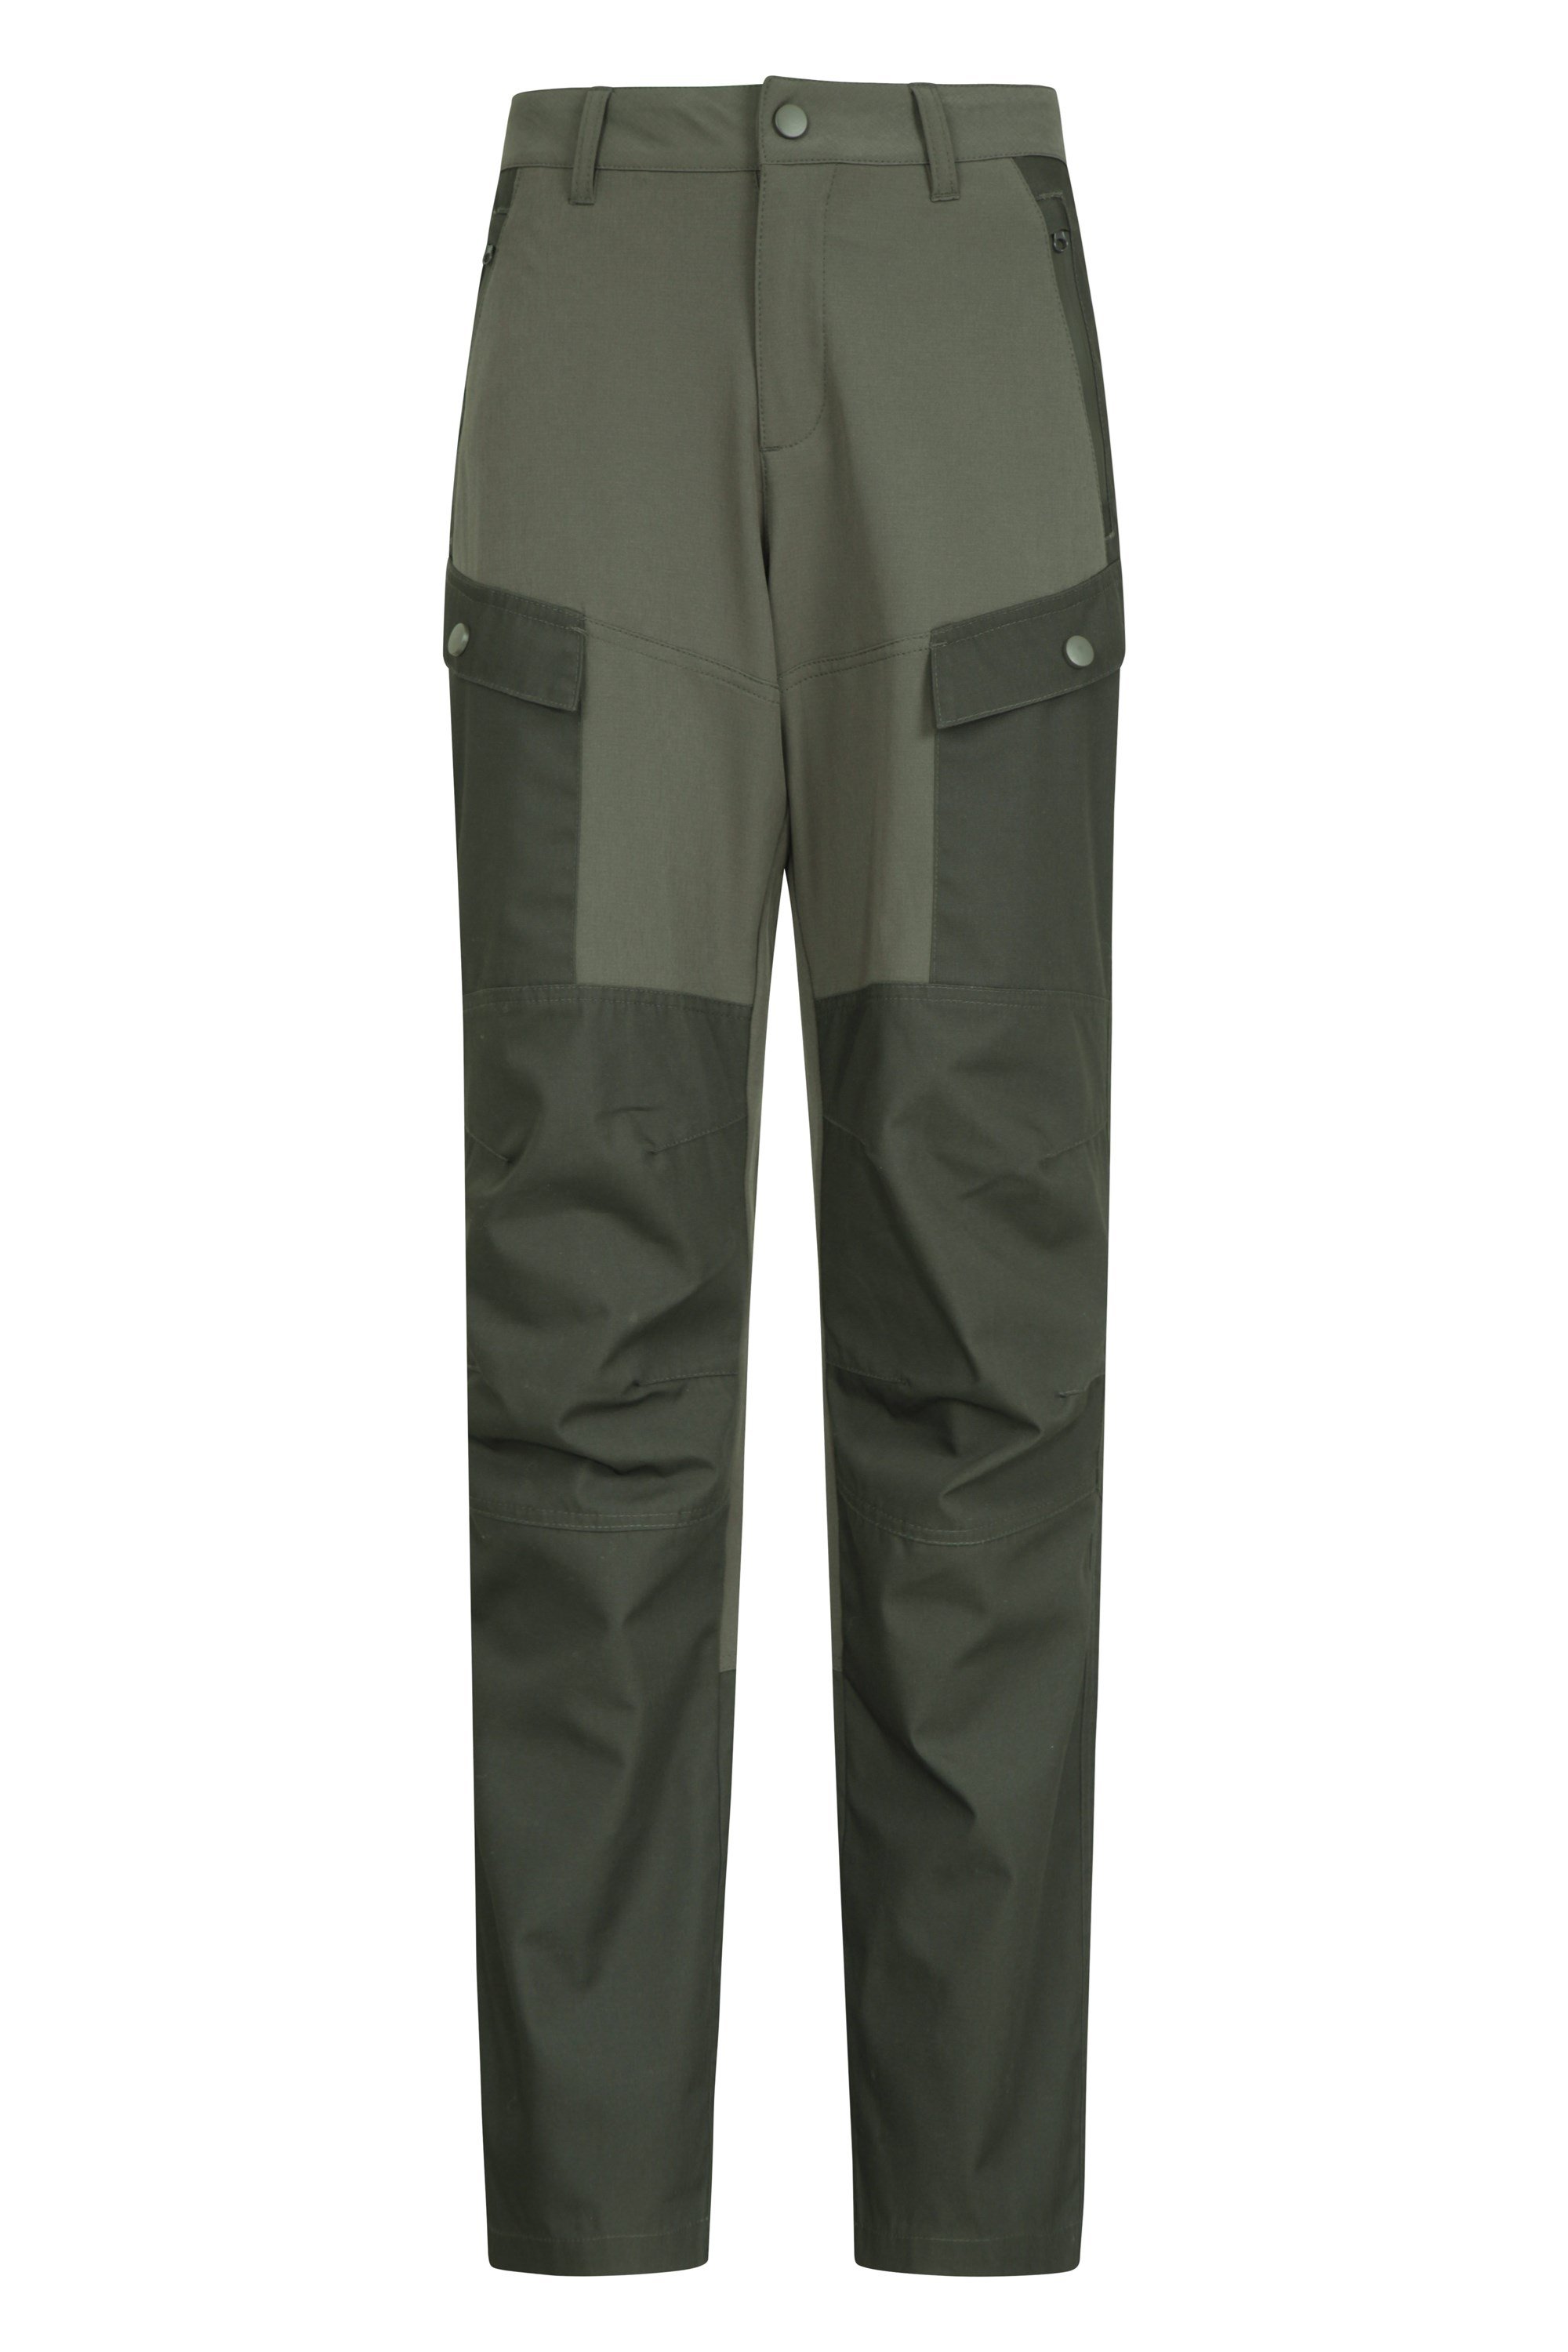 Pantalon Expedition Hybrid pour femme - Vert